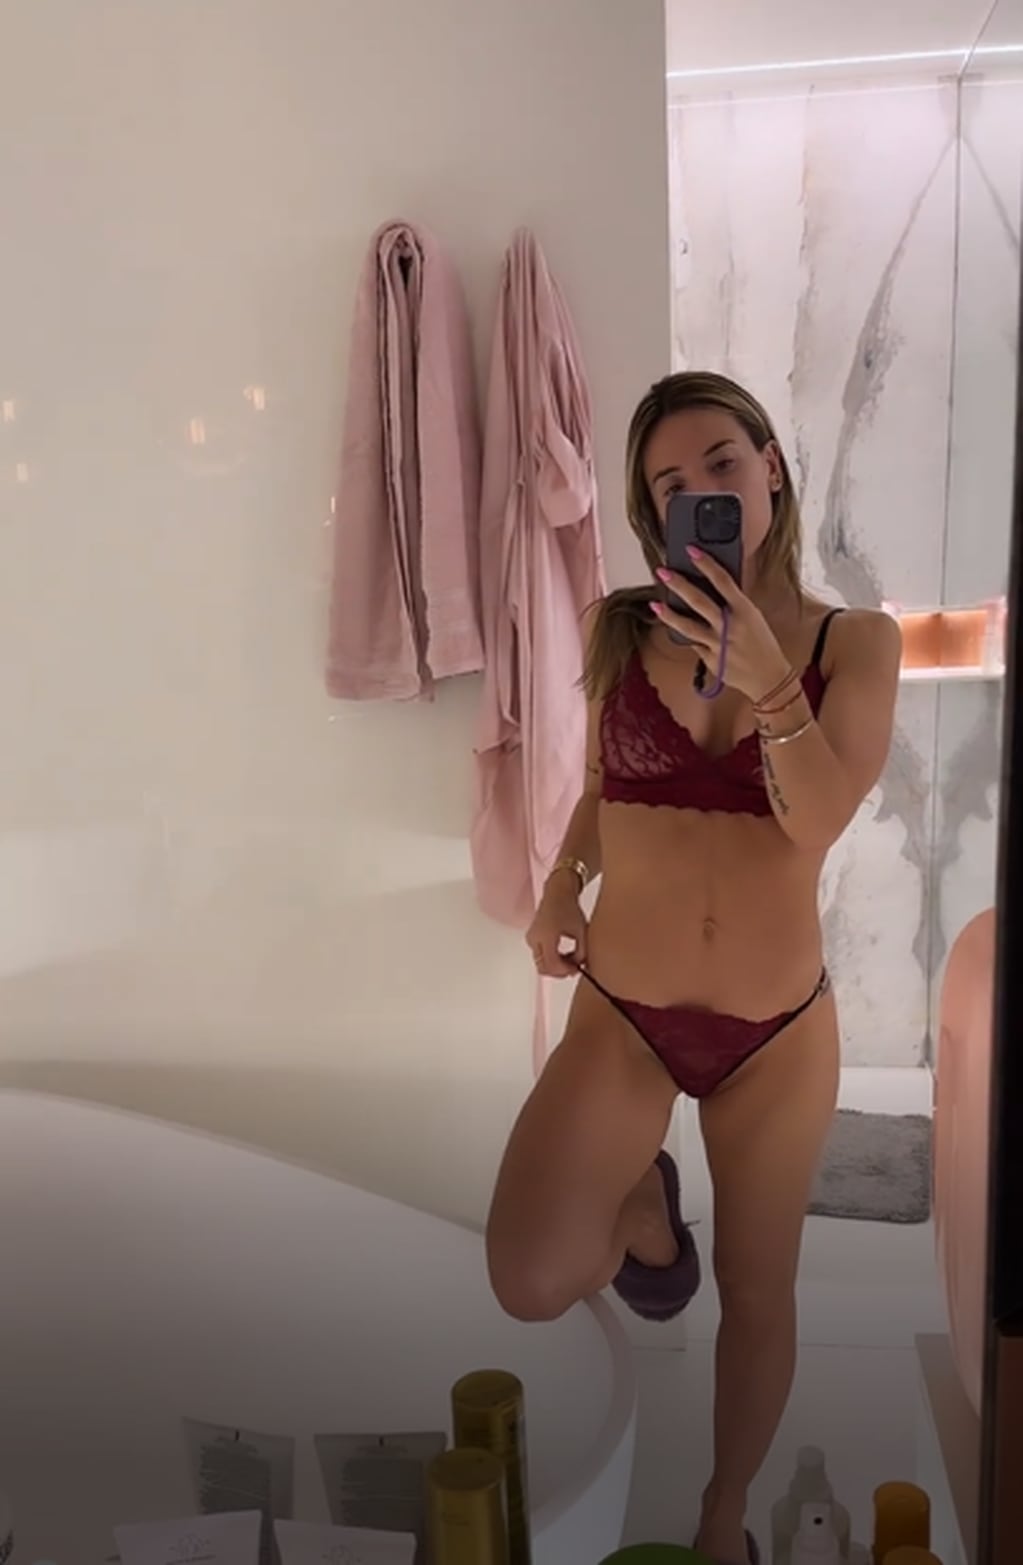 La modelo encendió Instagram al posar con un conjunto de lencería en el baño de su casa / Foto: Instagram